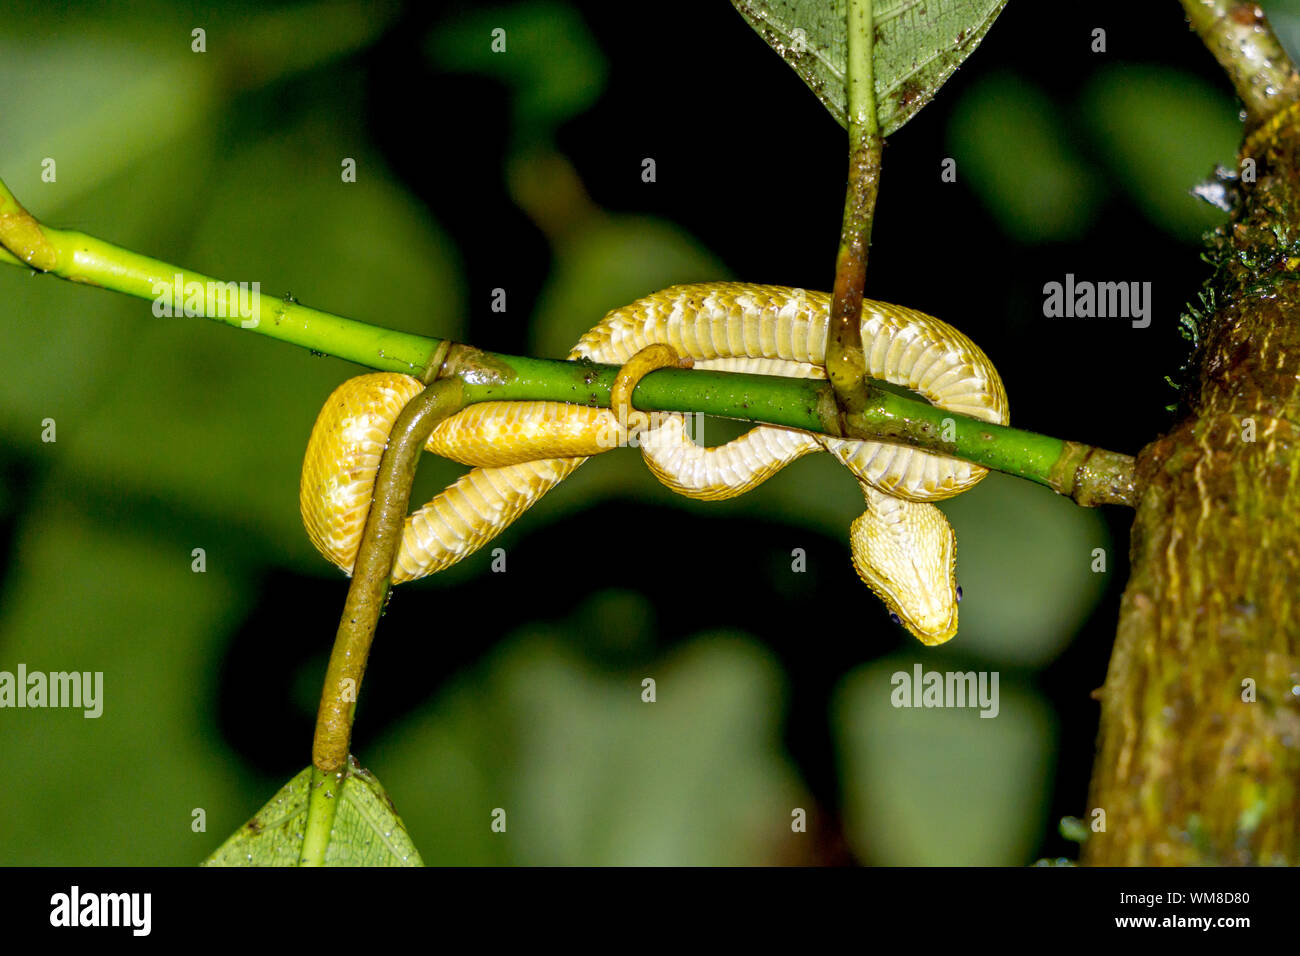 Viper cils serpent dans Wild, Costa Rica - Achille et échelles Vue détaillée Banque D'Images